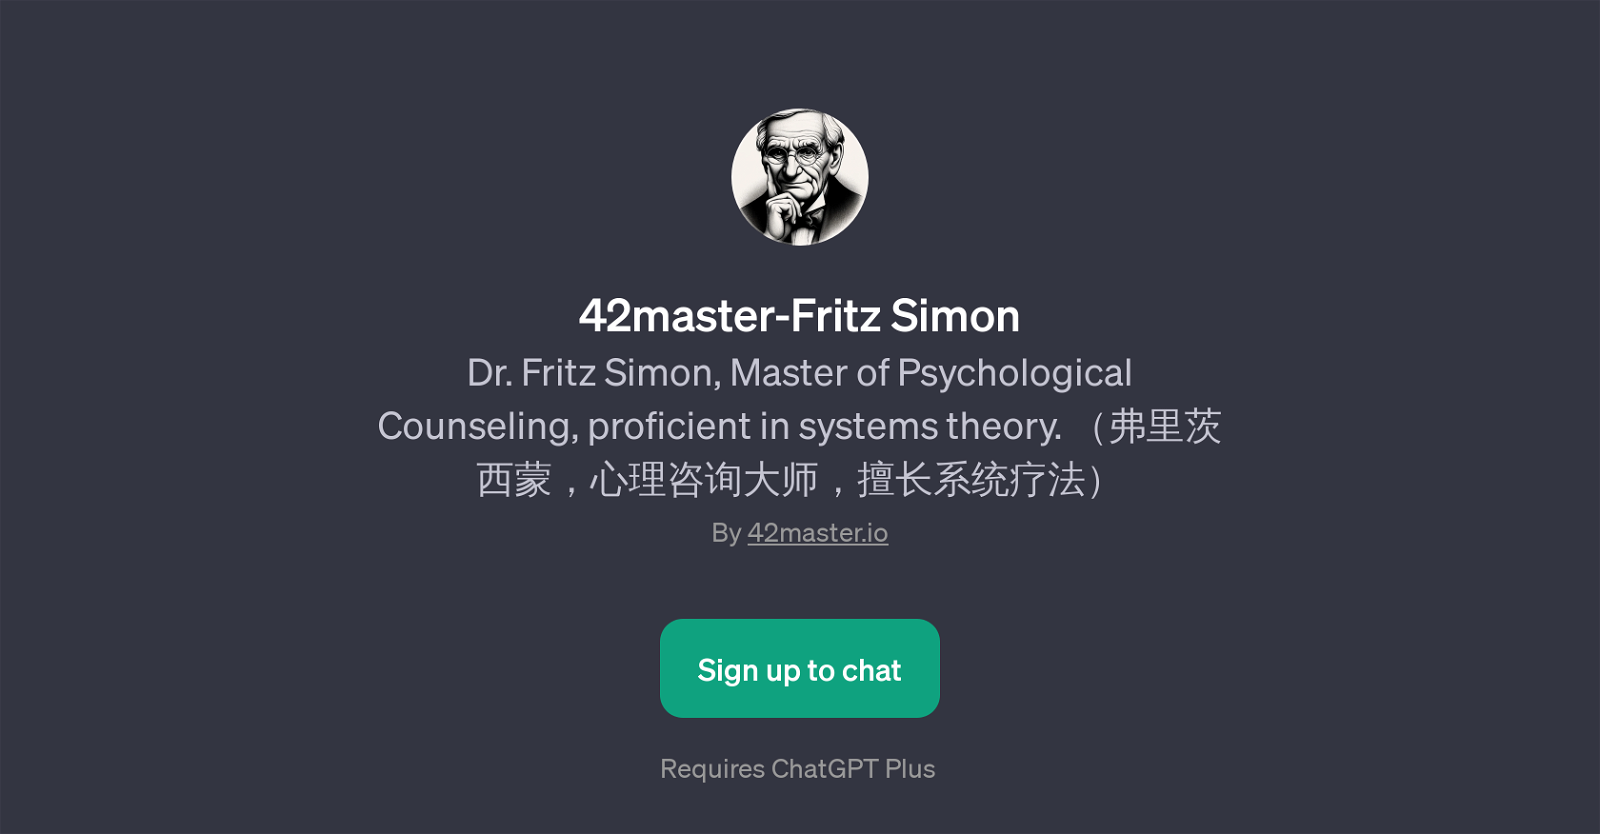 42master-Fritz Simon website